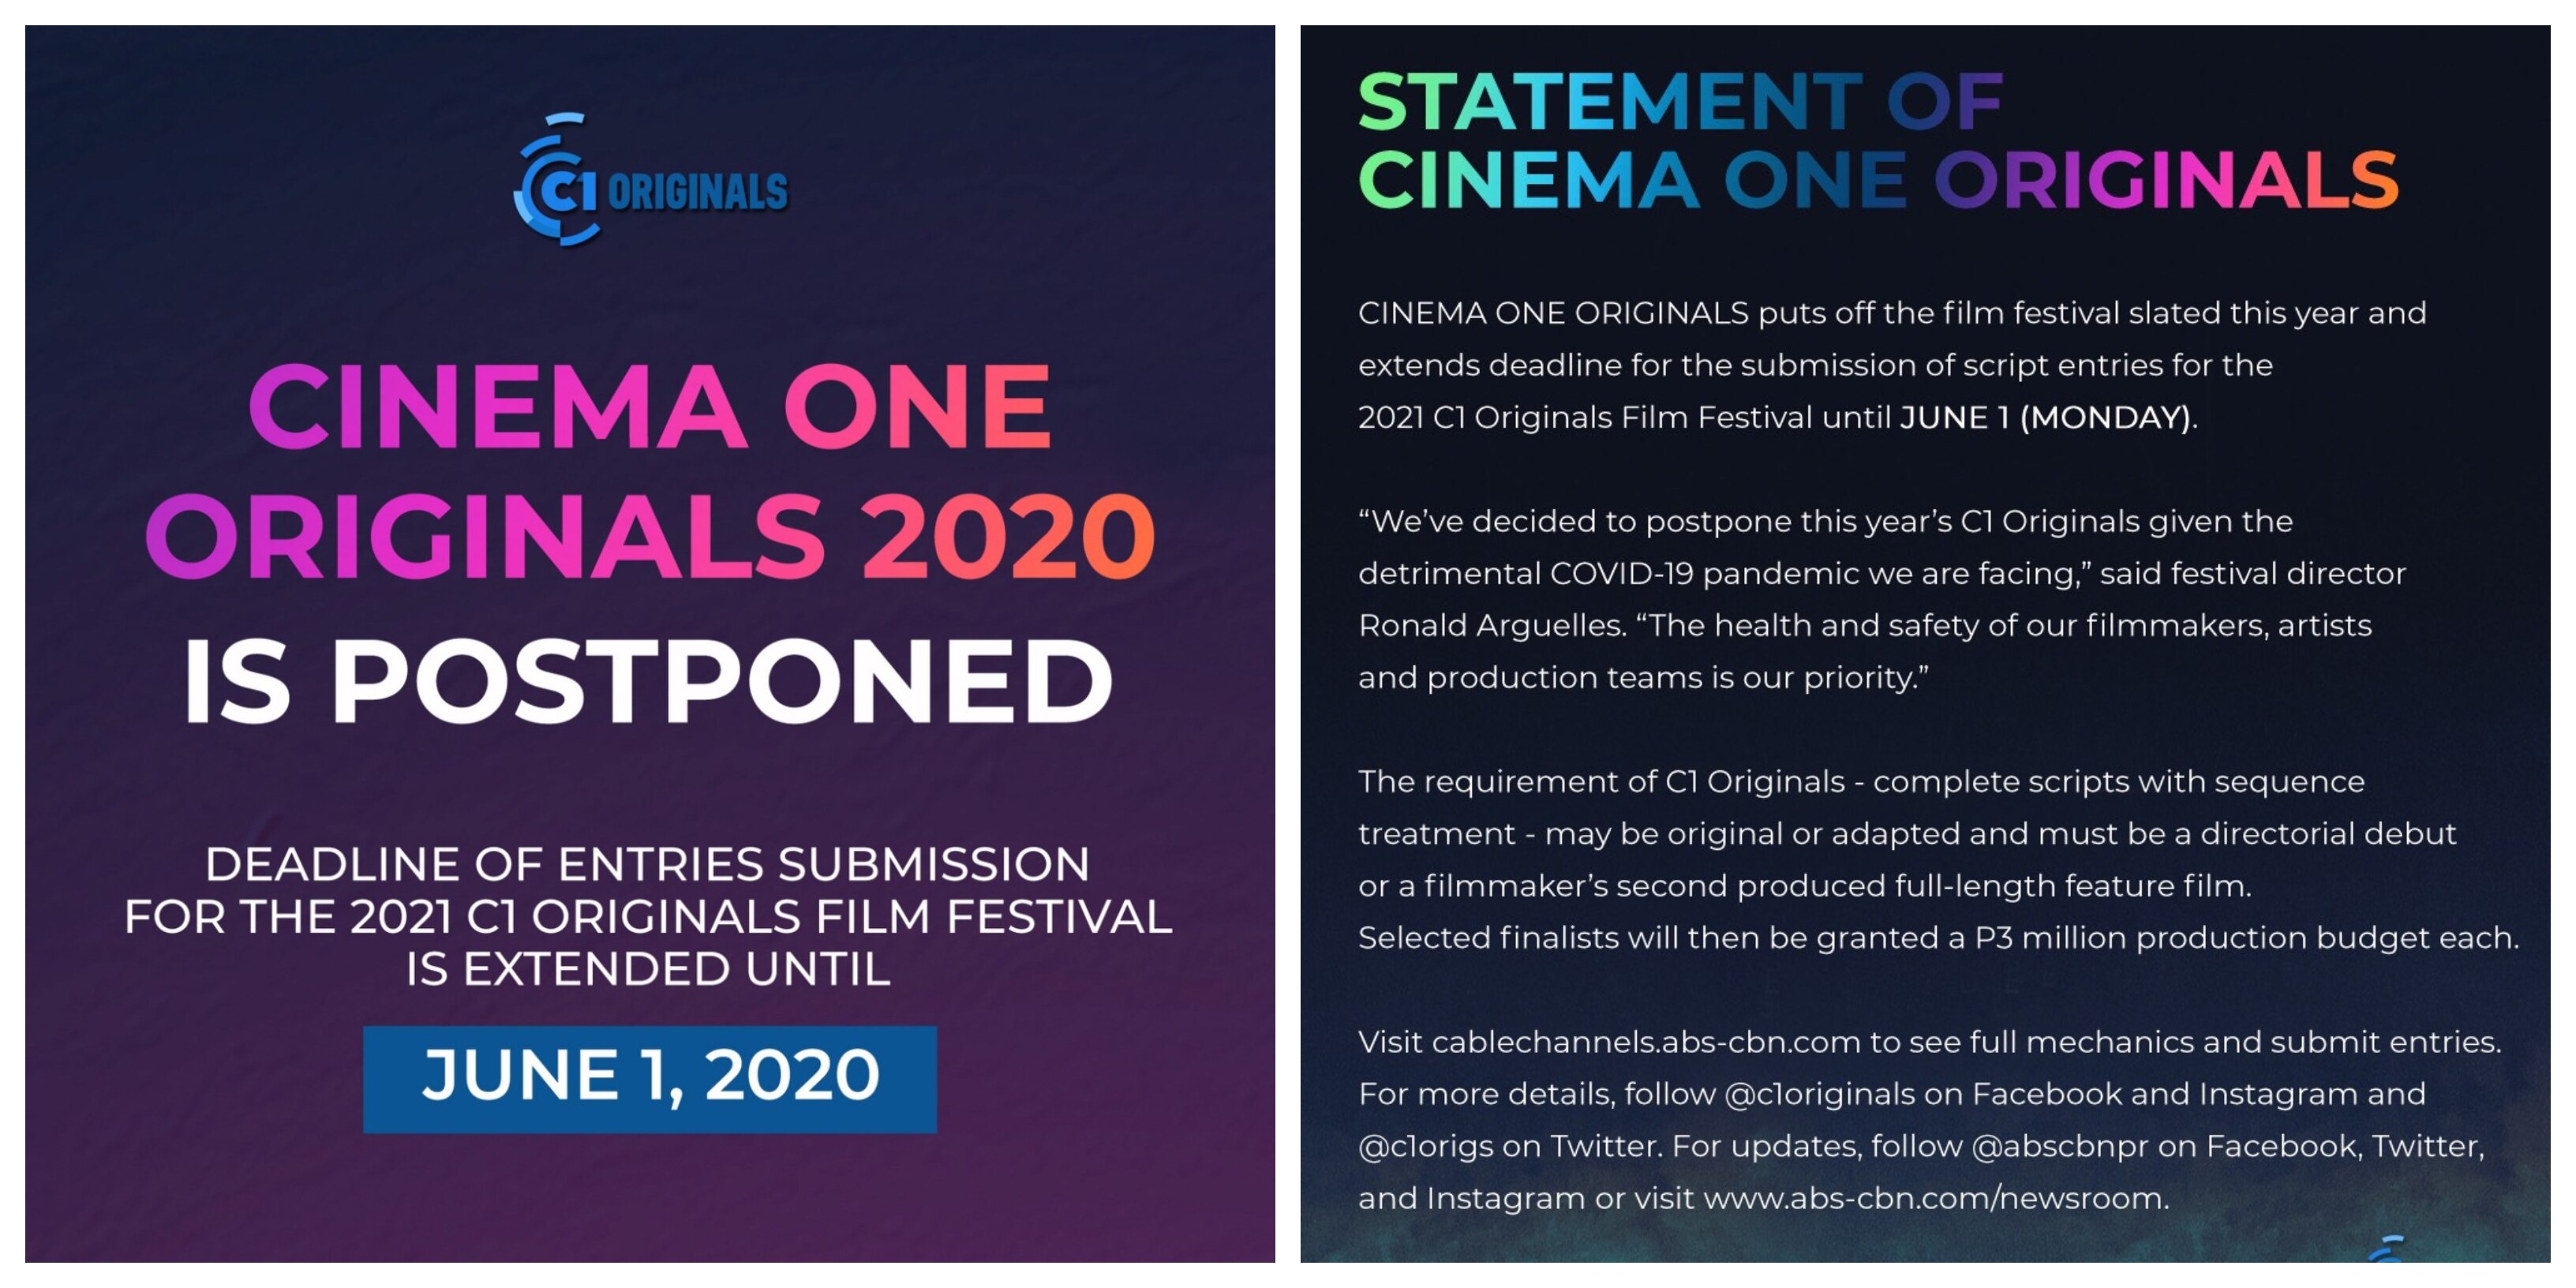 Cinema One Originals postpones this year's festival